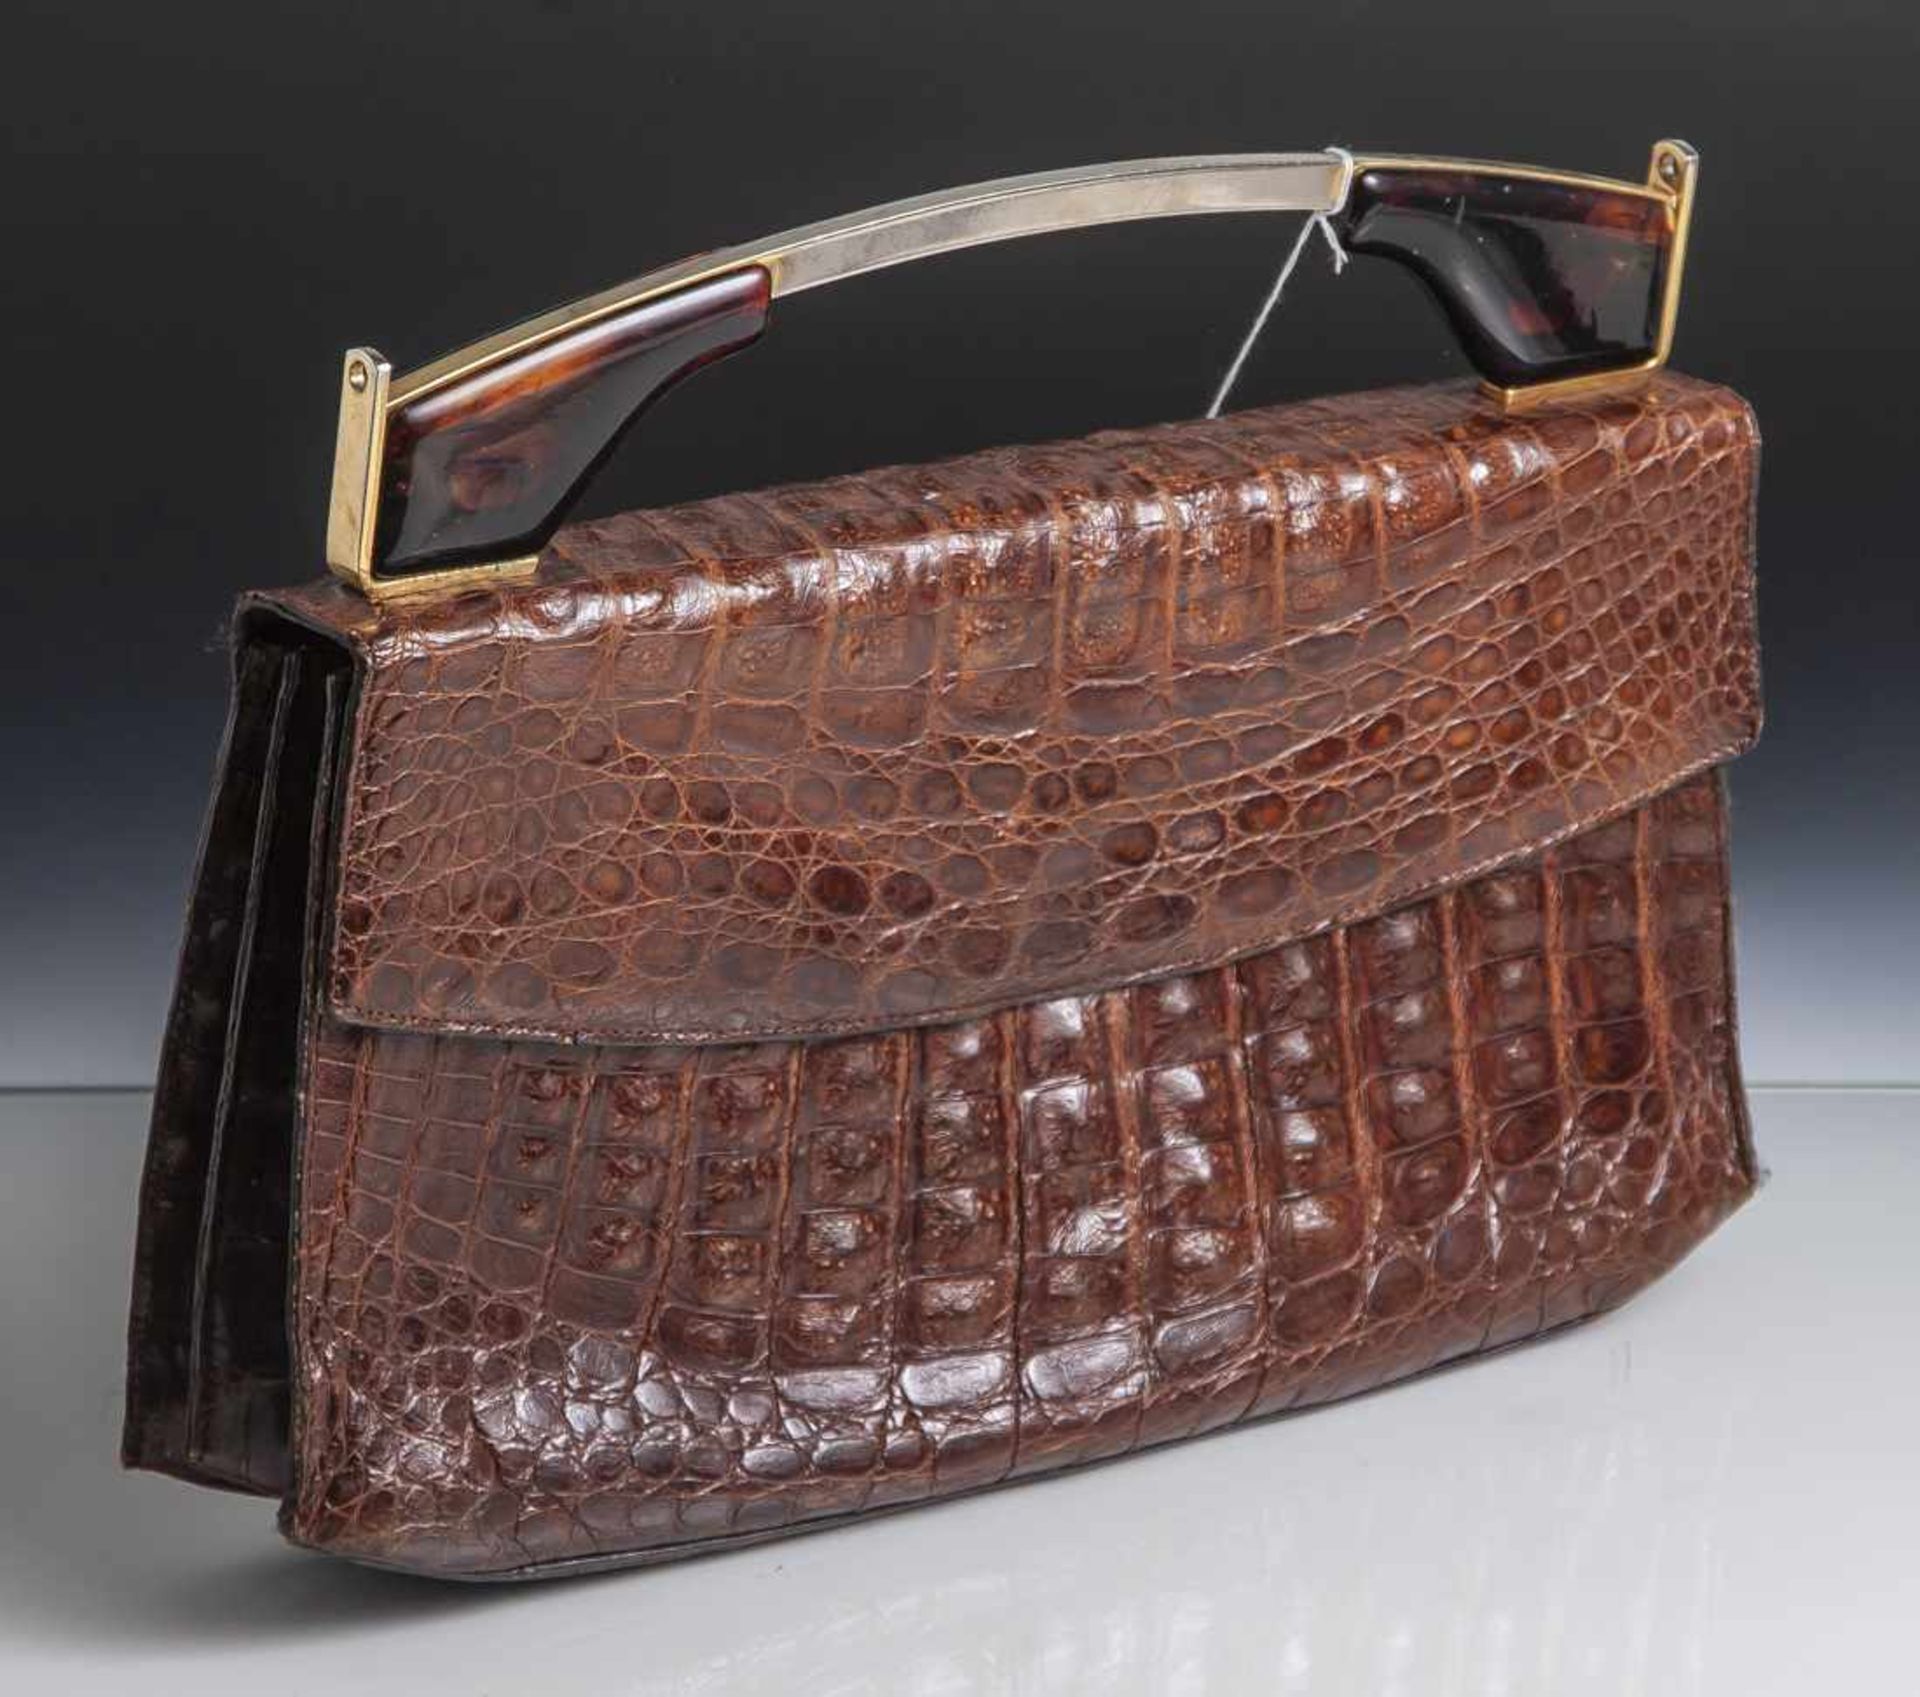 Damenhandtasche, 1950/60er Jahre, braunes Krokodilleder, Metallbügel mit Auflagen in